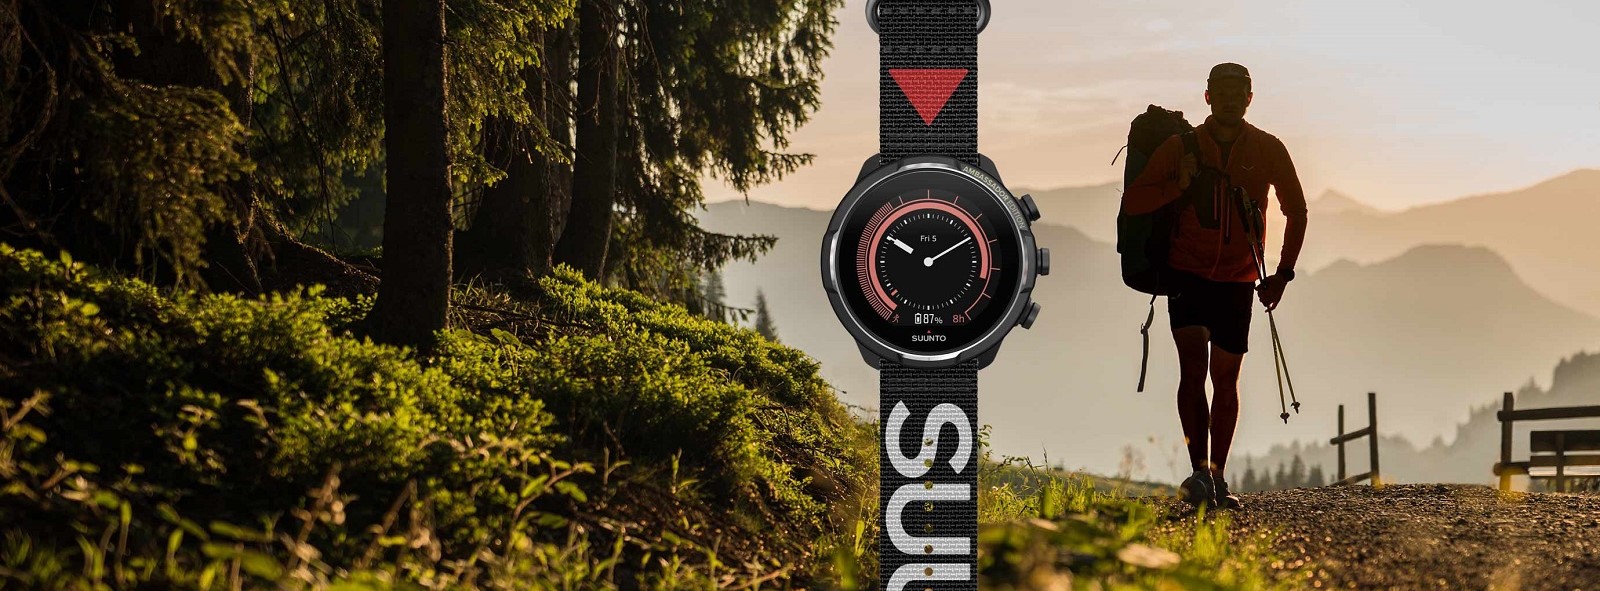 Suunto 9 Baro Titanium Ambassador Edition – start your exciting adventure!